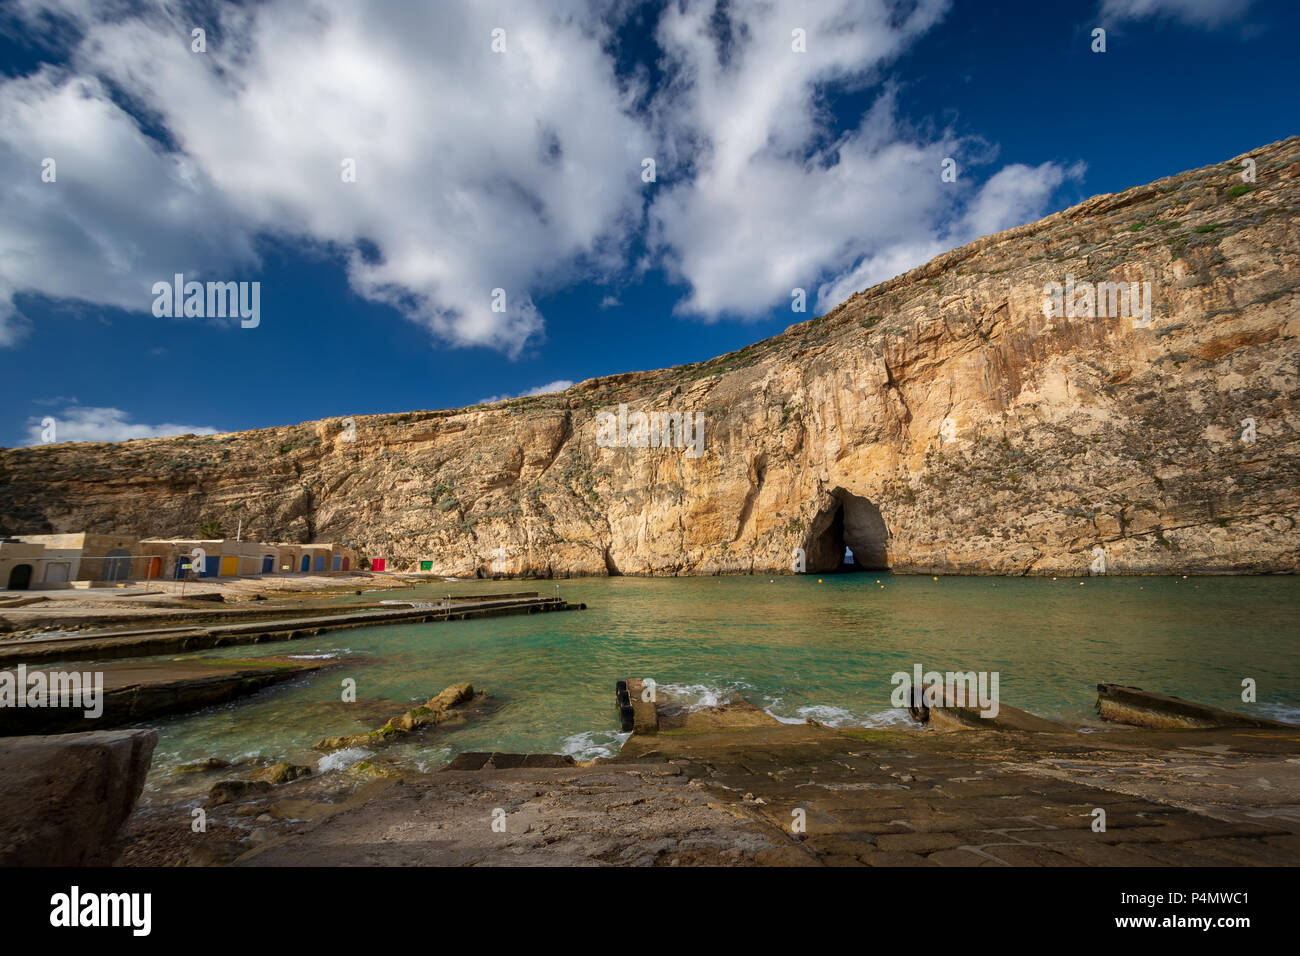 Binnenmeer, Maltesisch, Wahrzeichen. Insel Gozo, Malta. Stockfoto